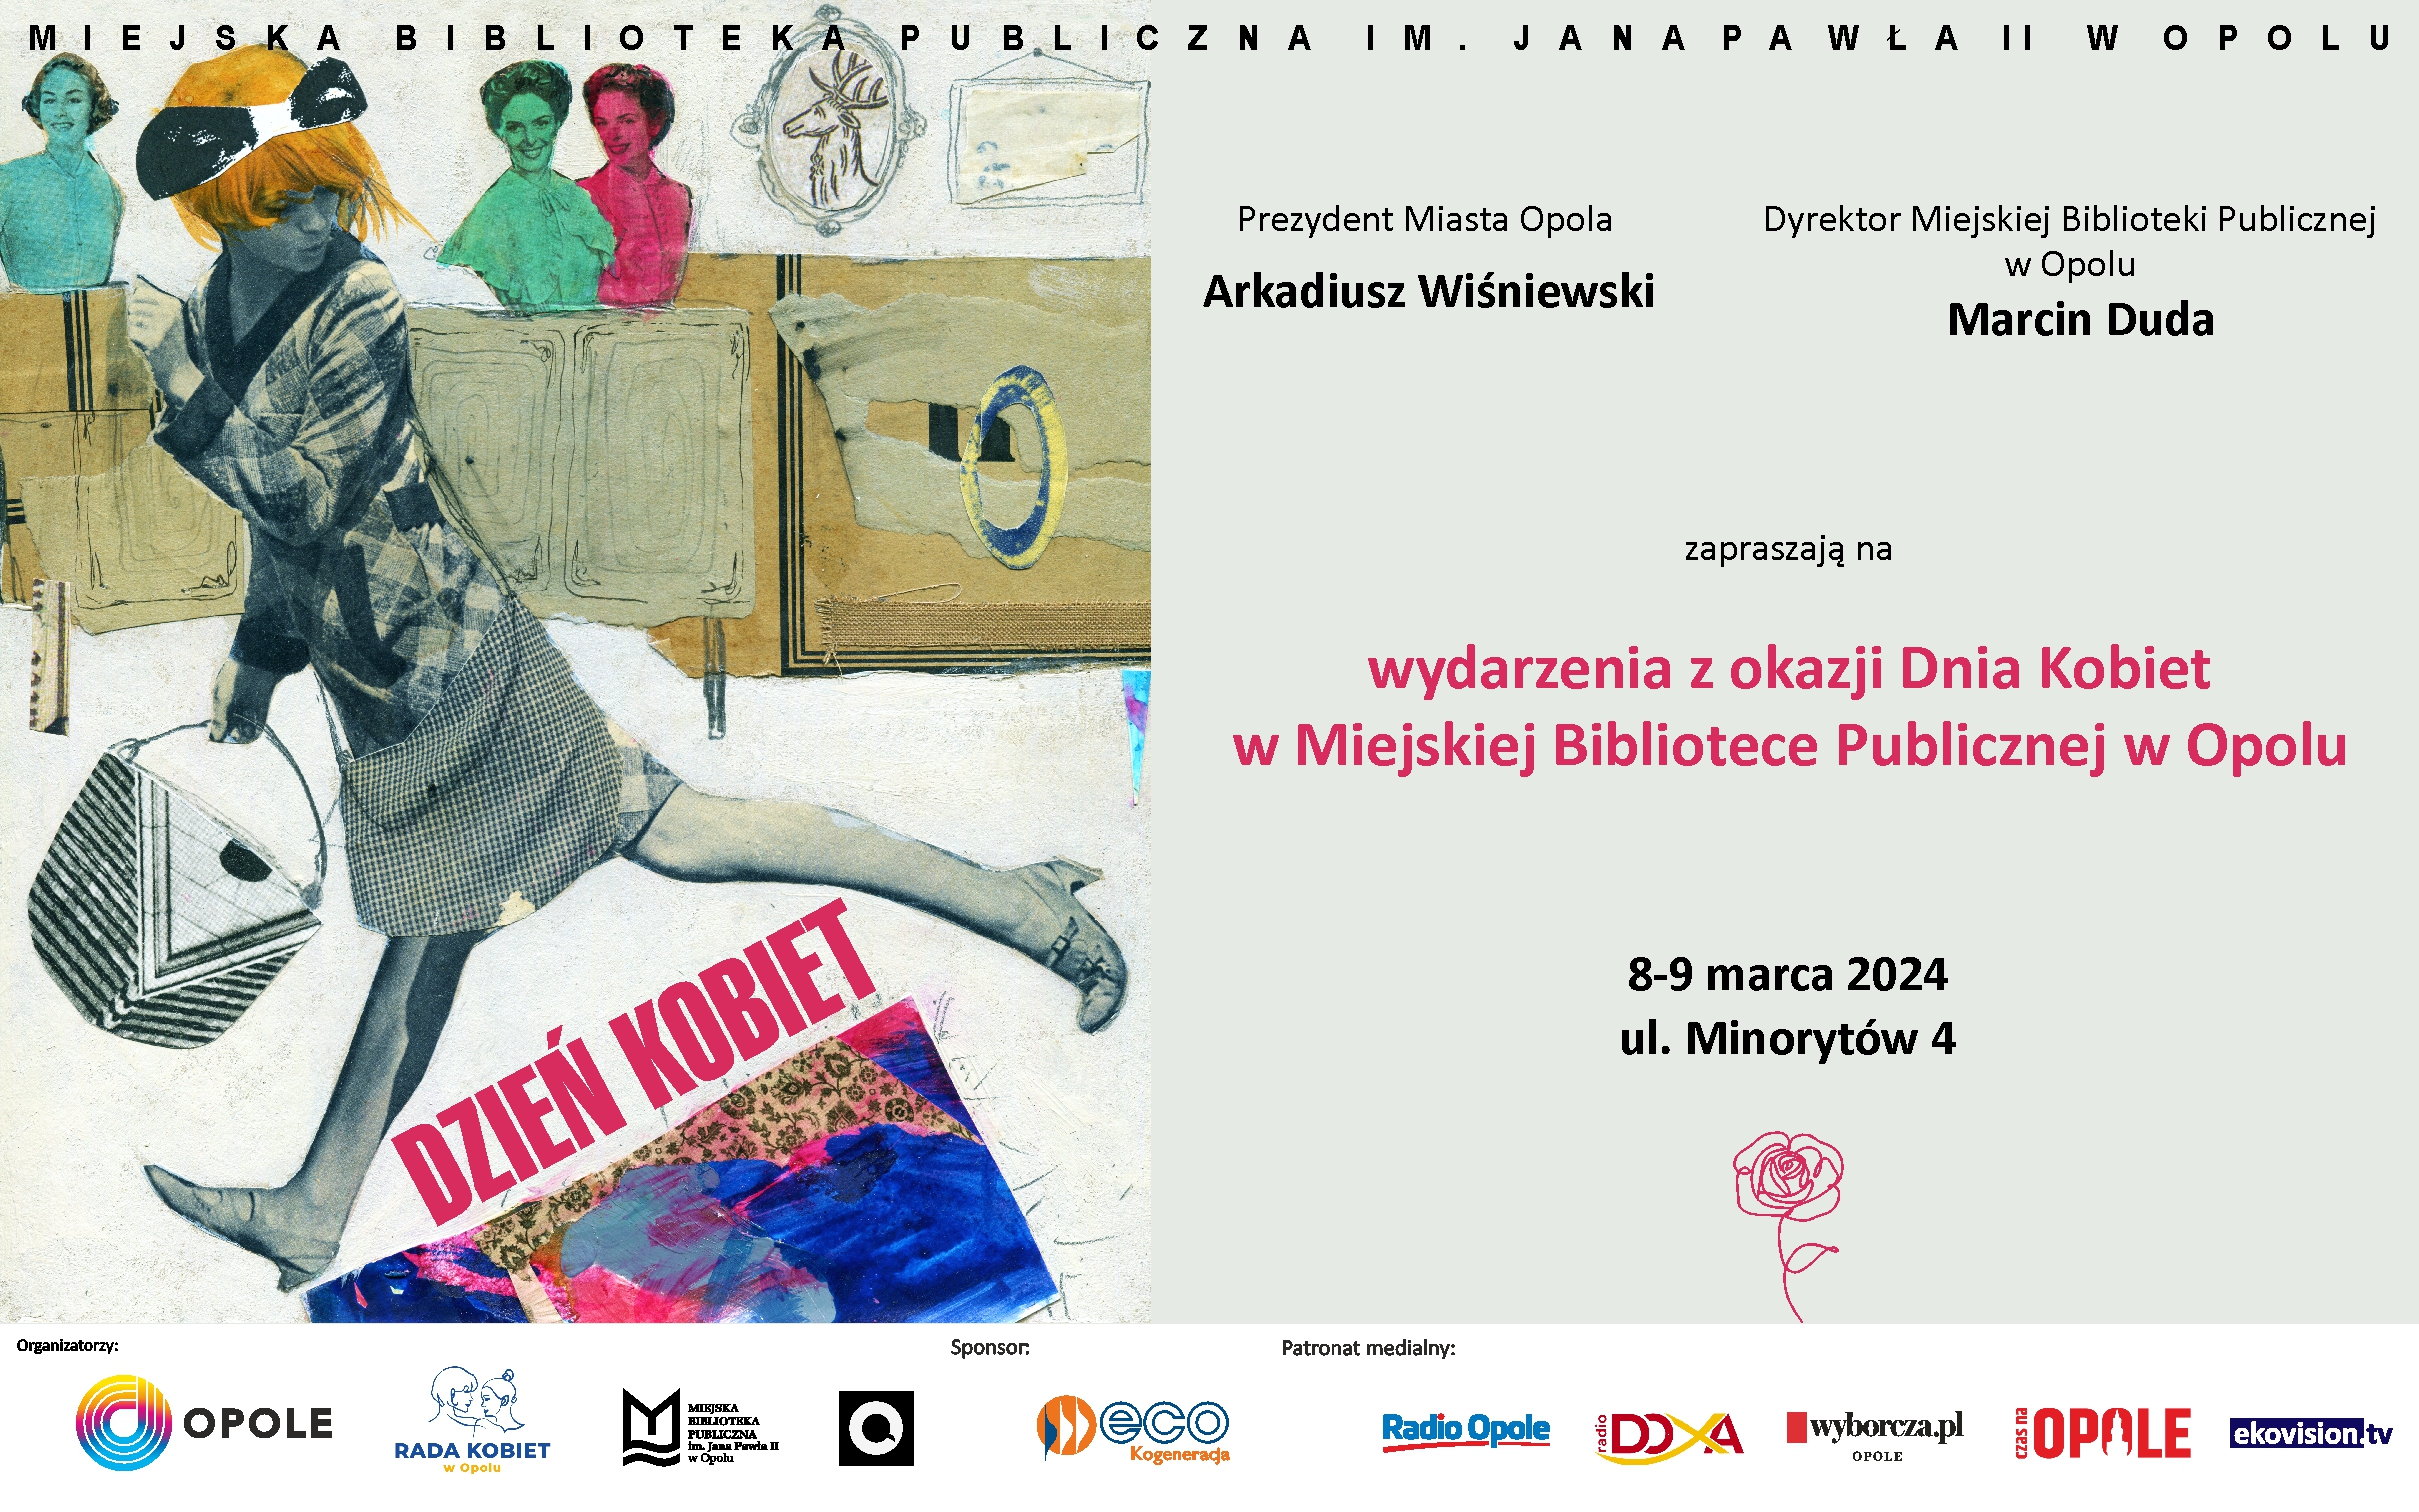 Wydarzenia z okazji Dnia Kobiet w Miejskiej Bibliotece Publicznej w Opolu